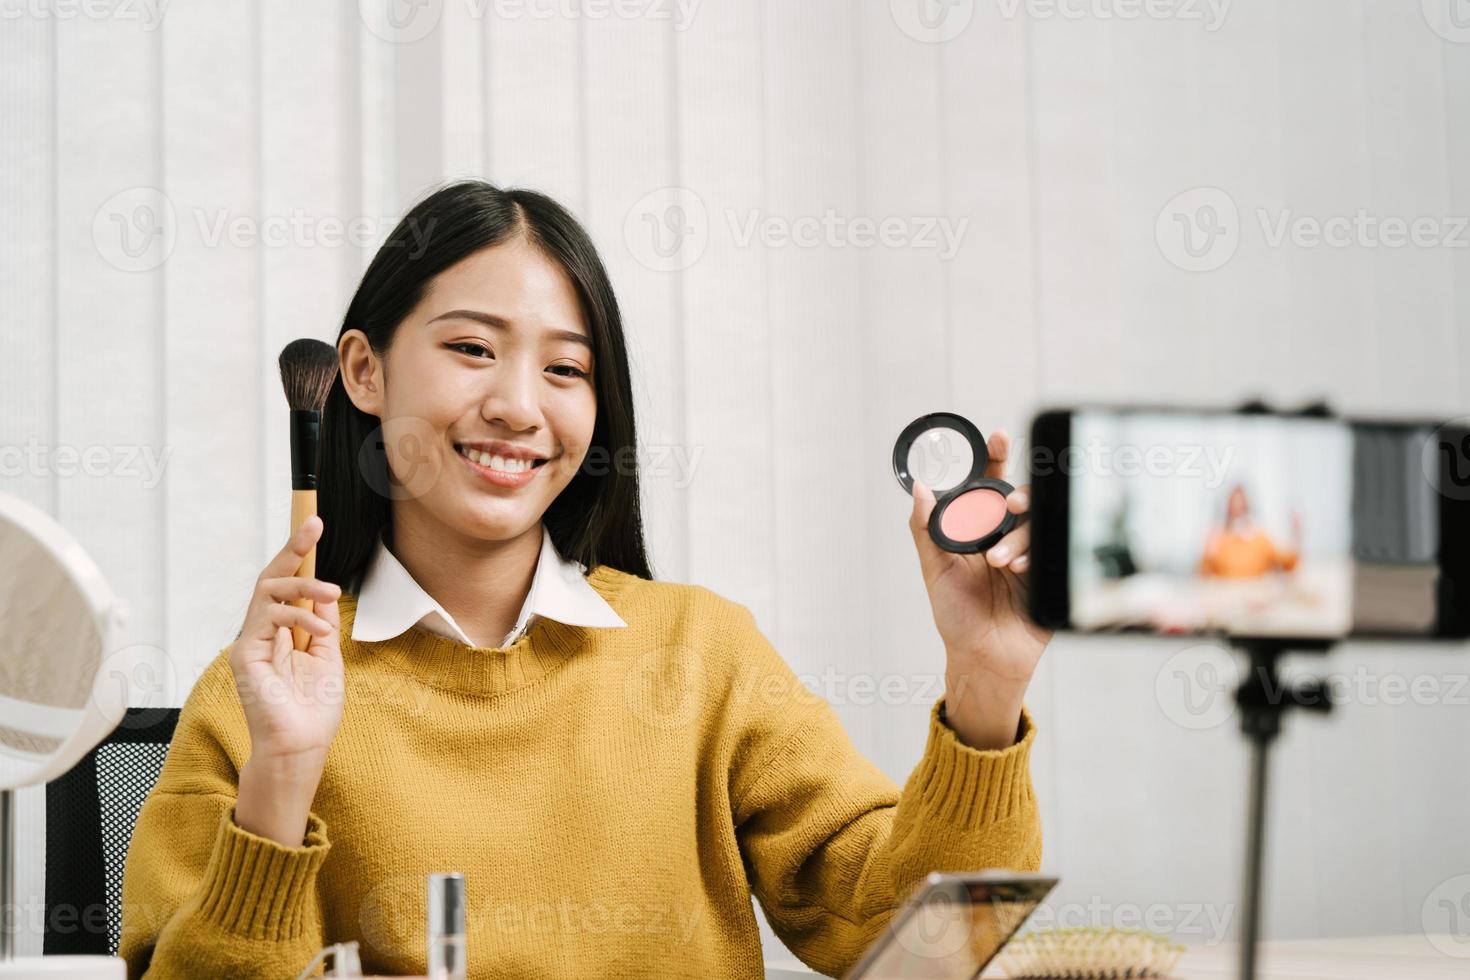 giovane donna asiatica che registra se stessa sui prodotti di bellezza realizzando un video per il suo blog sui cosmetici usando la fotocamera del telefono a casa. foto